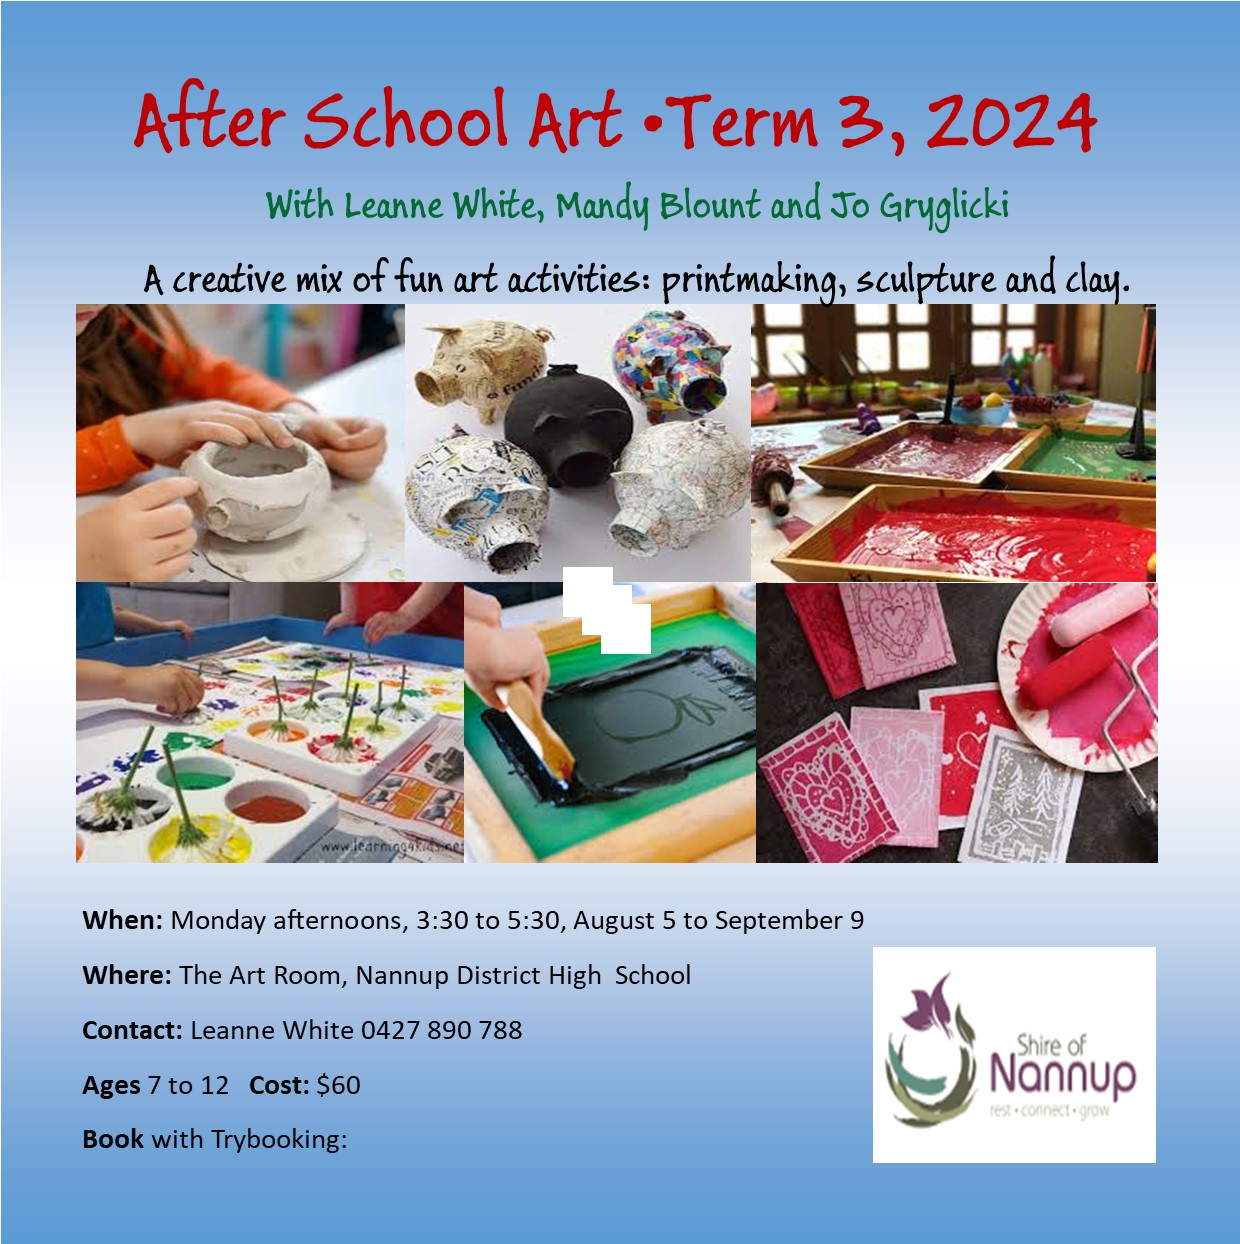 After School Art, Term 3, 2024